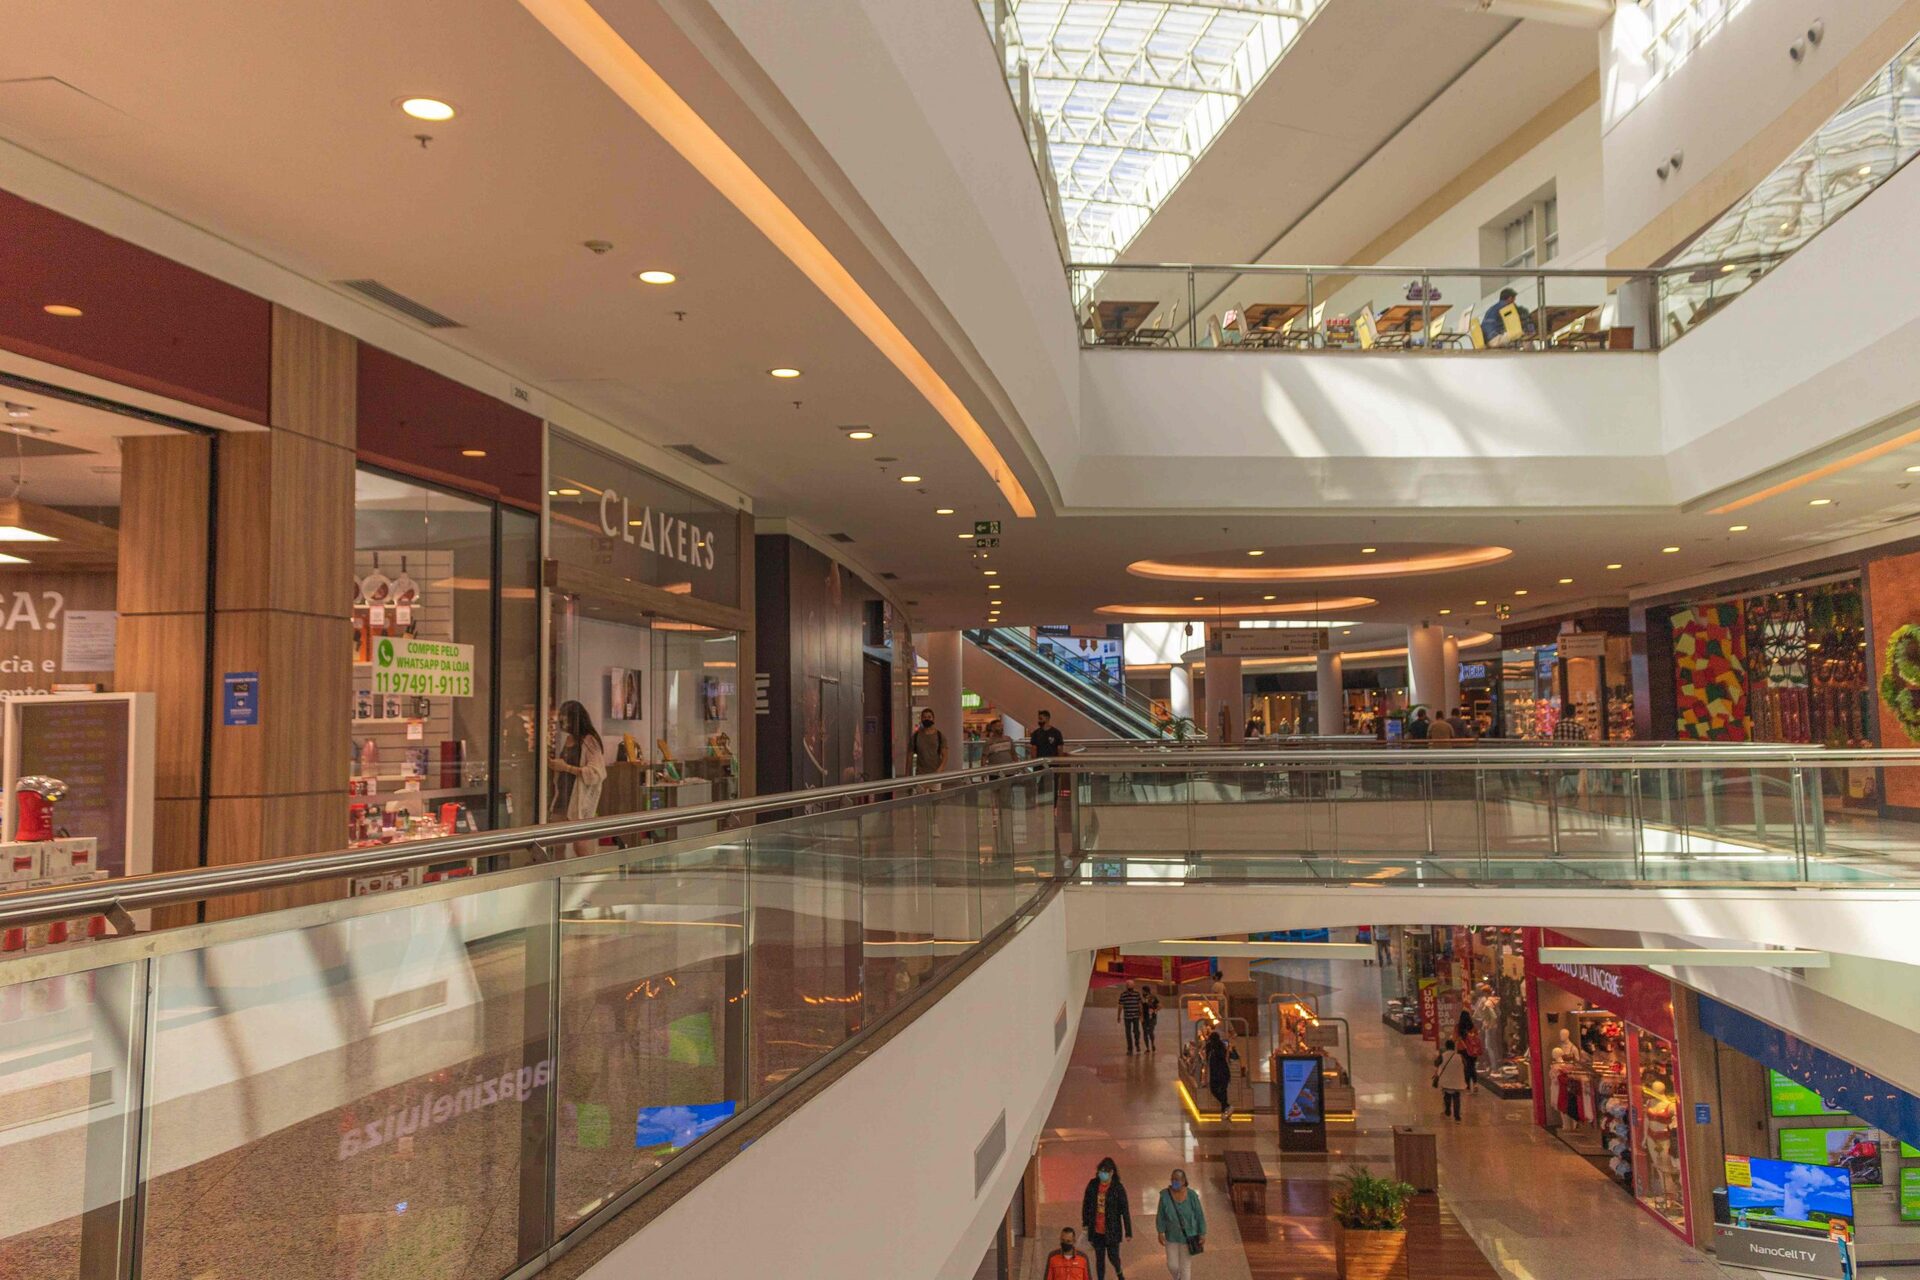 Shopping São Bernardo Plaza estende seus horários de funcionamento